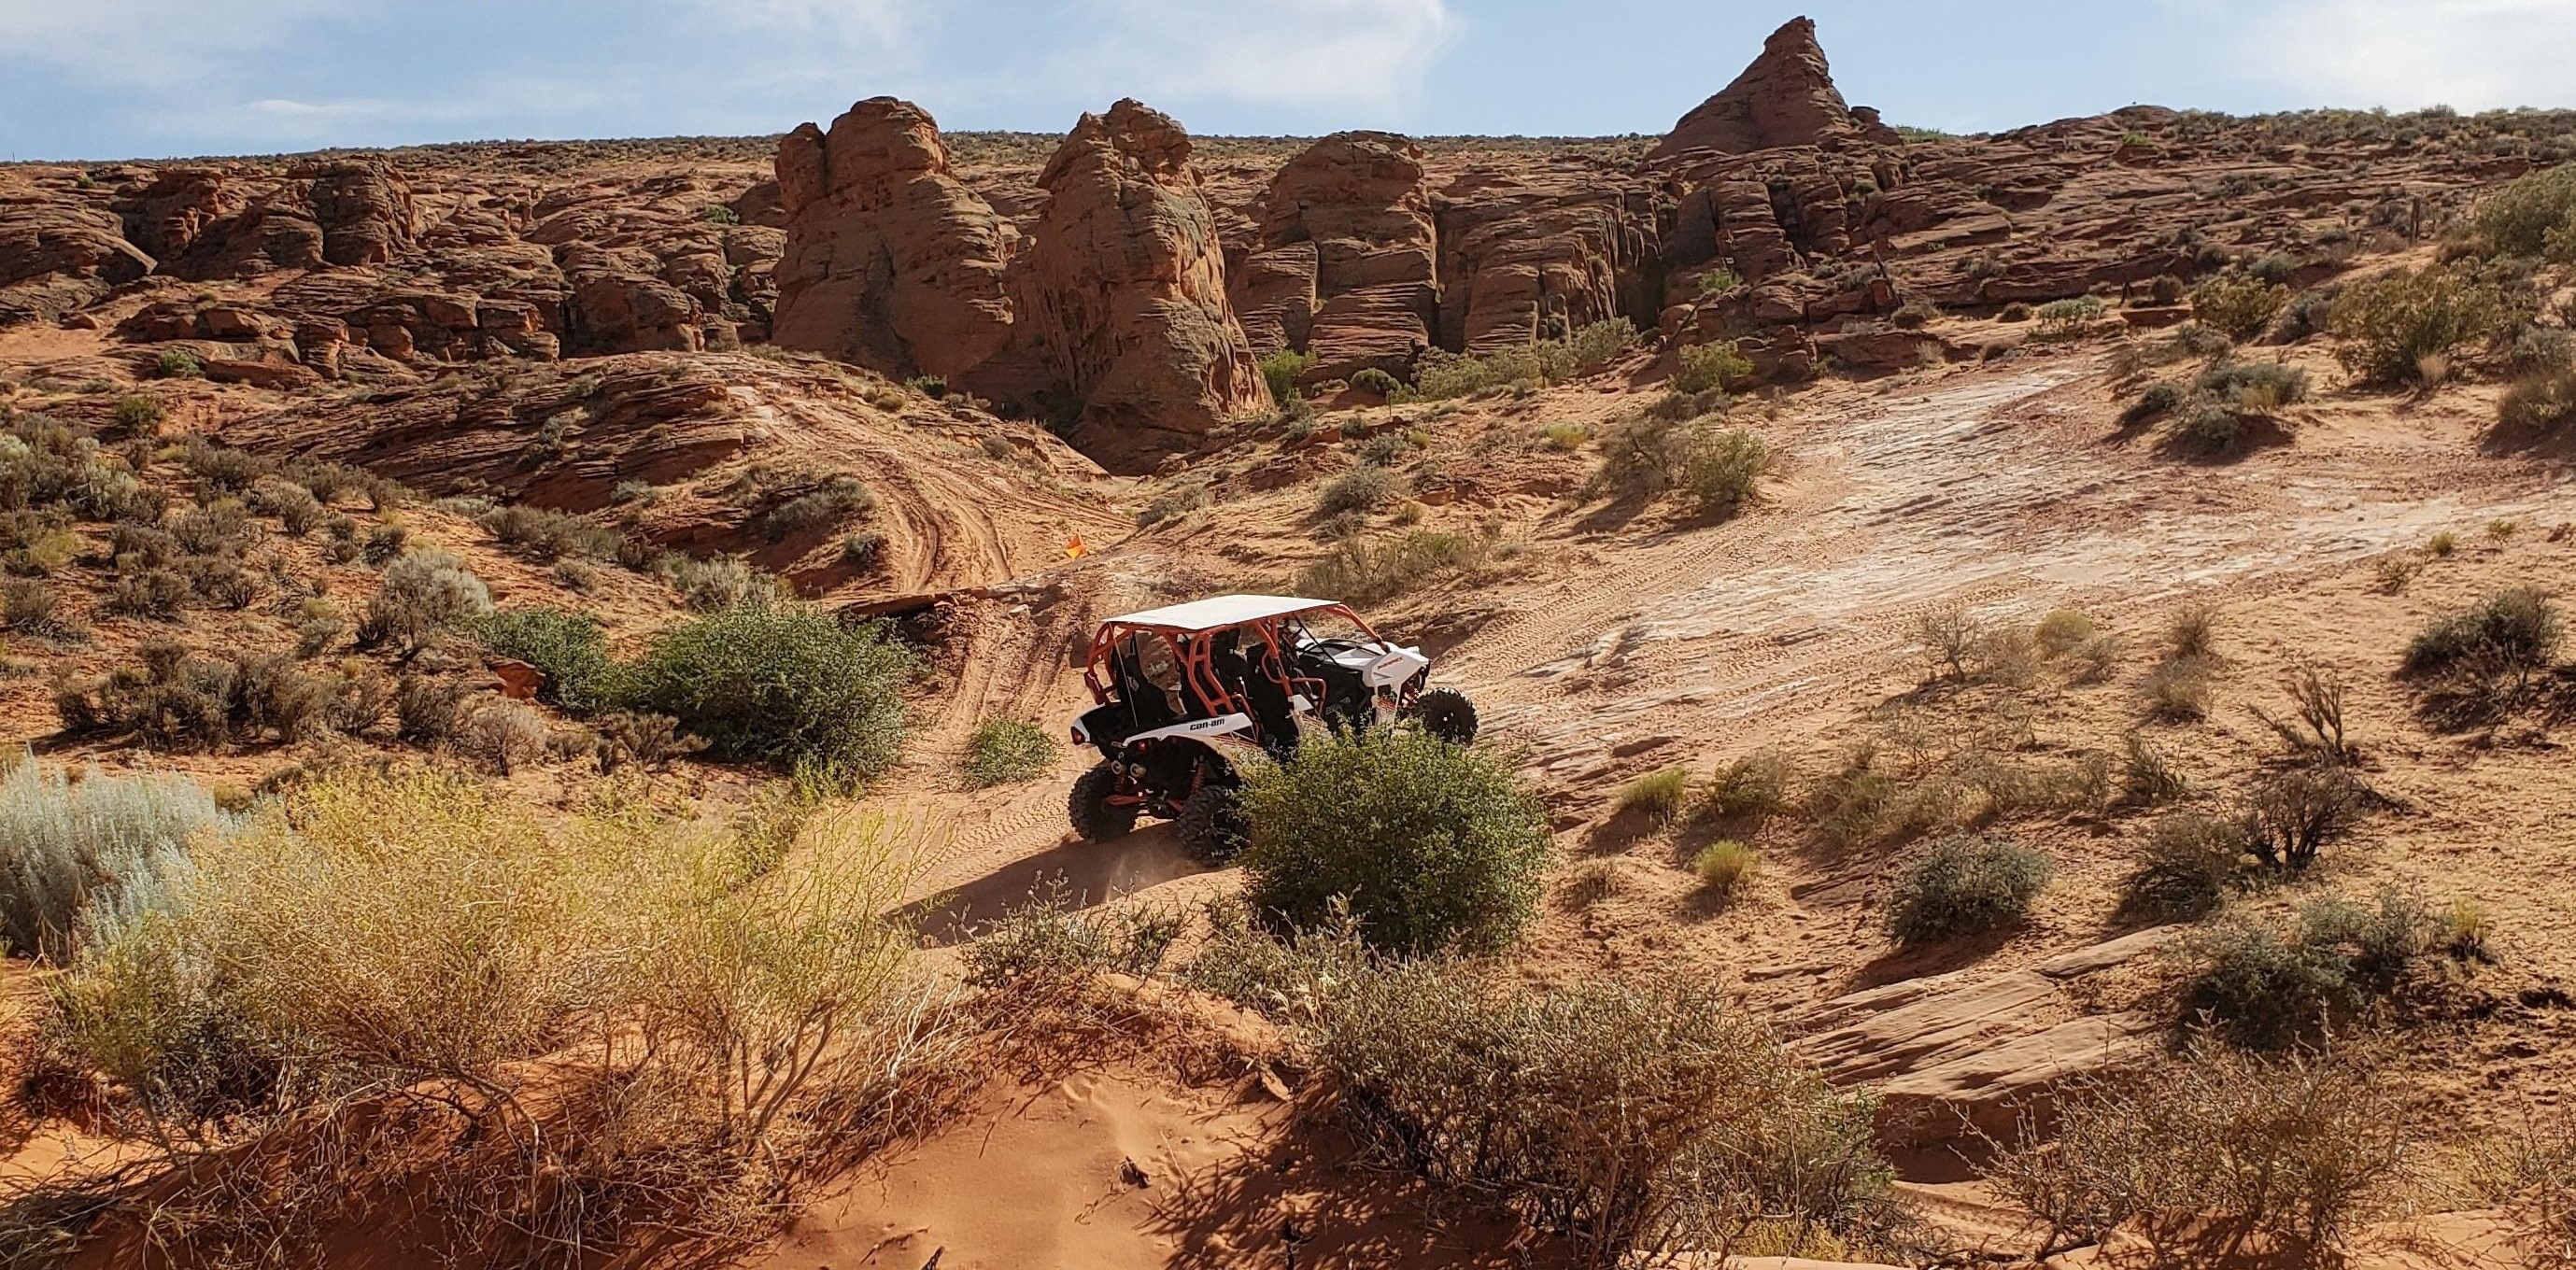 Maverick in desert with rocks